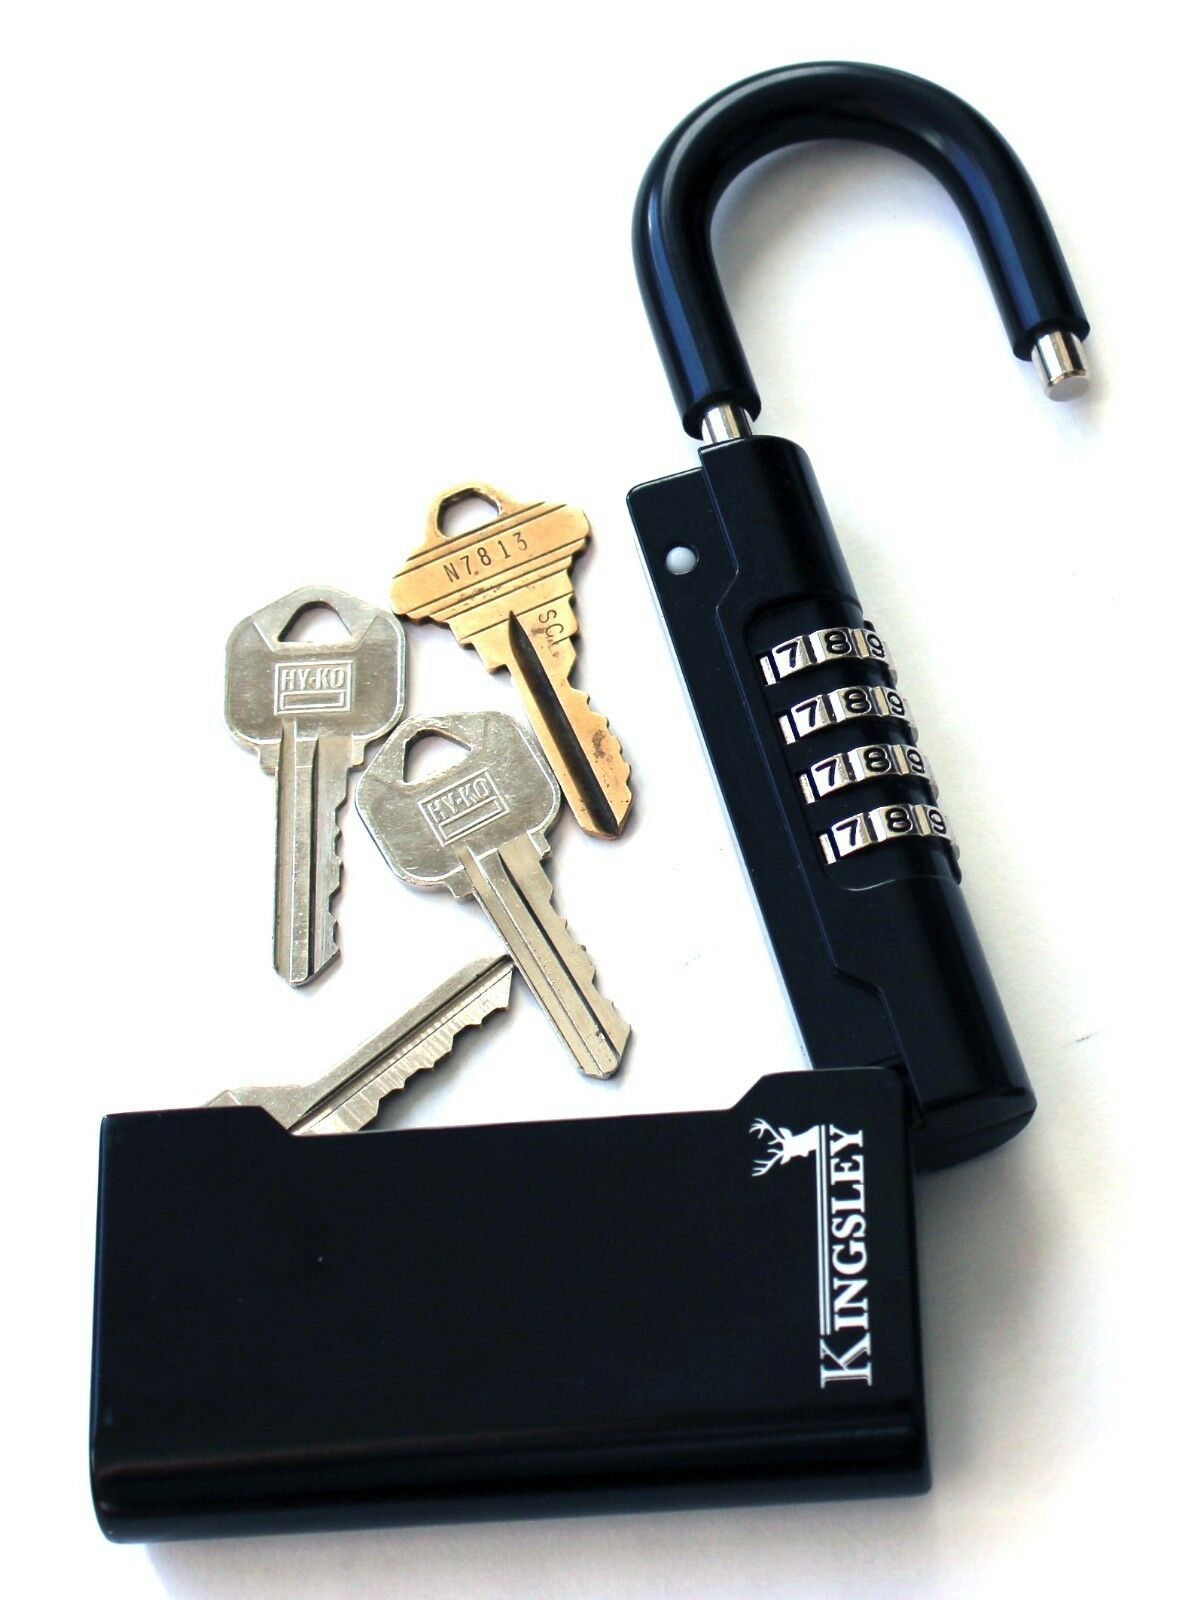 New Kingsley Guard-a-key Key Storage Lock- Real Estate Lock Box, Realtor Lockbox